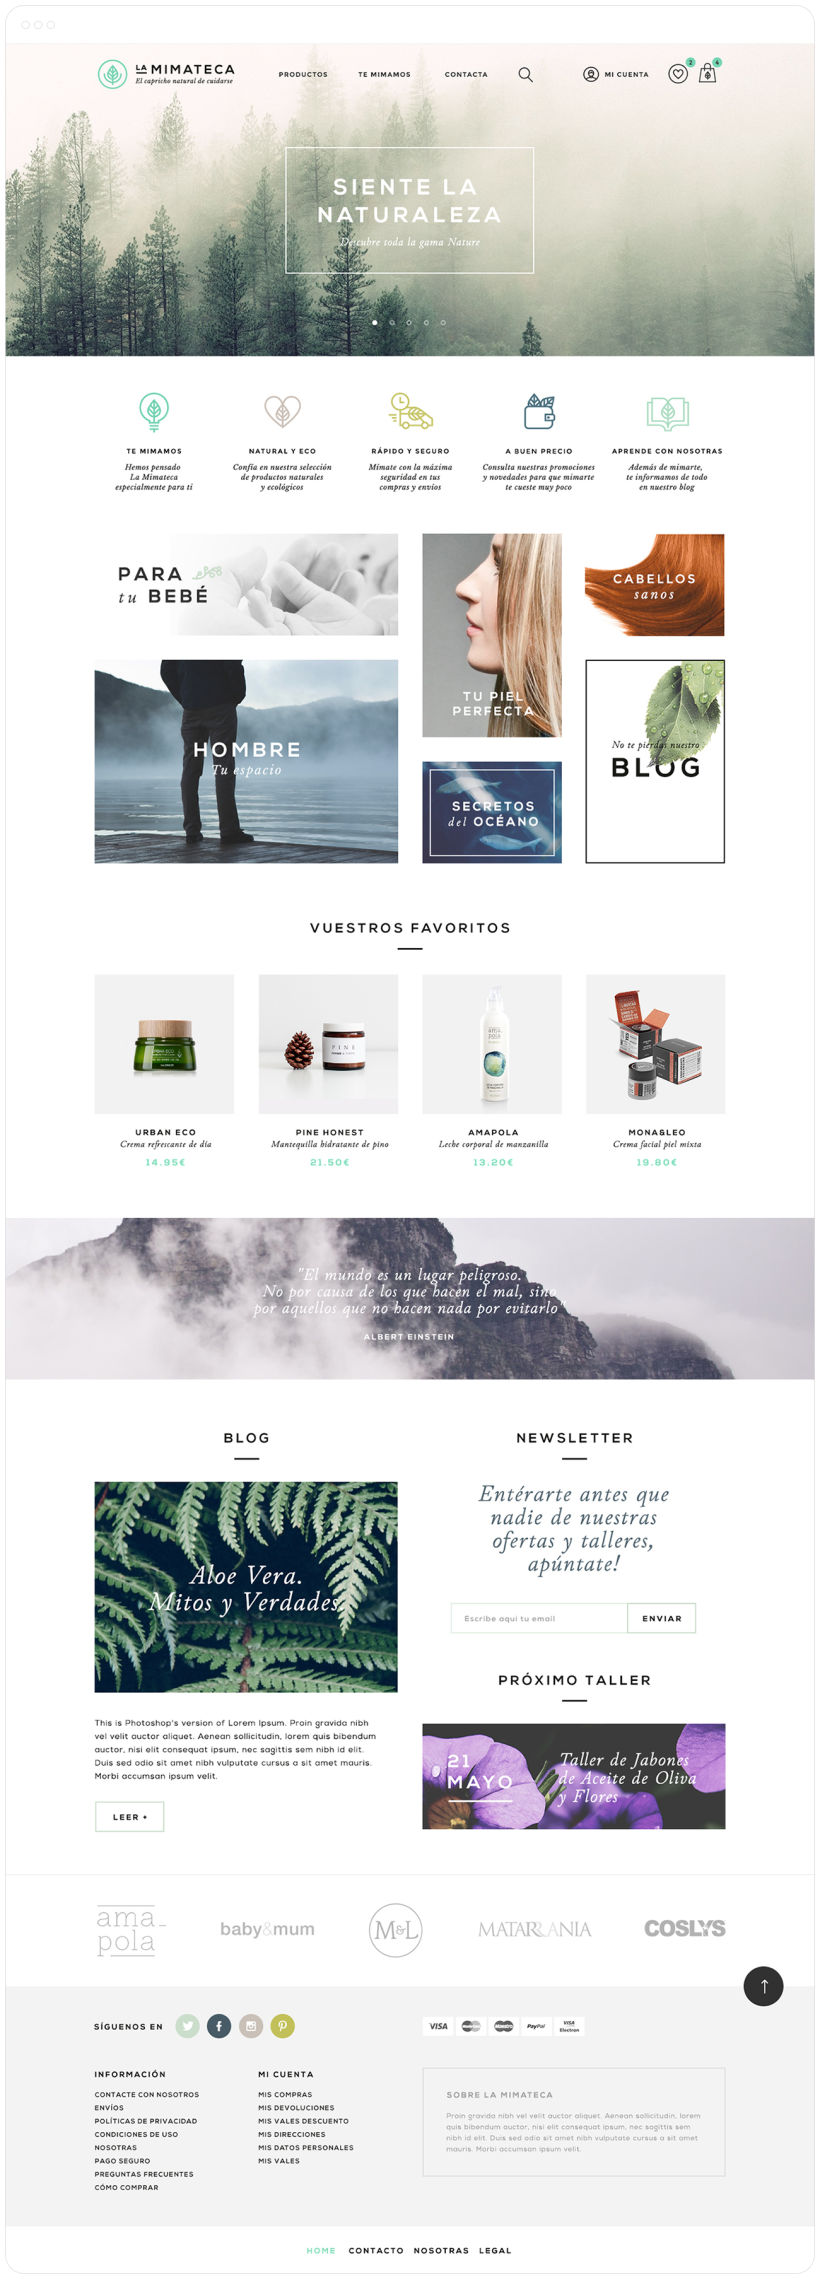 La Mimateca — Branding & E-commerce 11